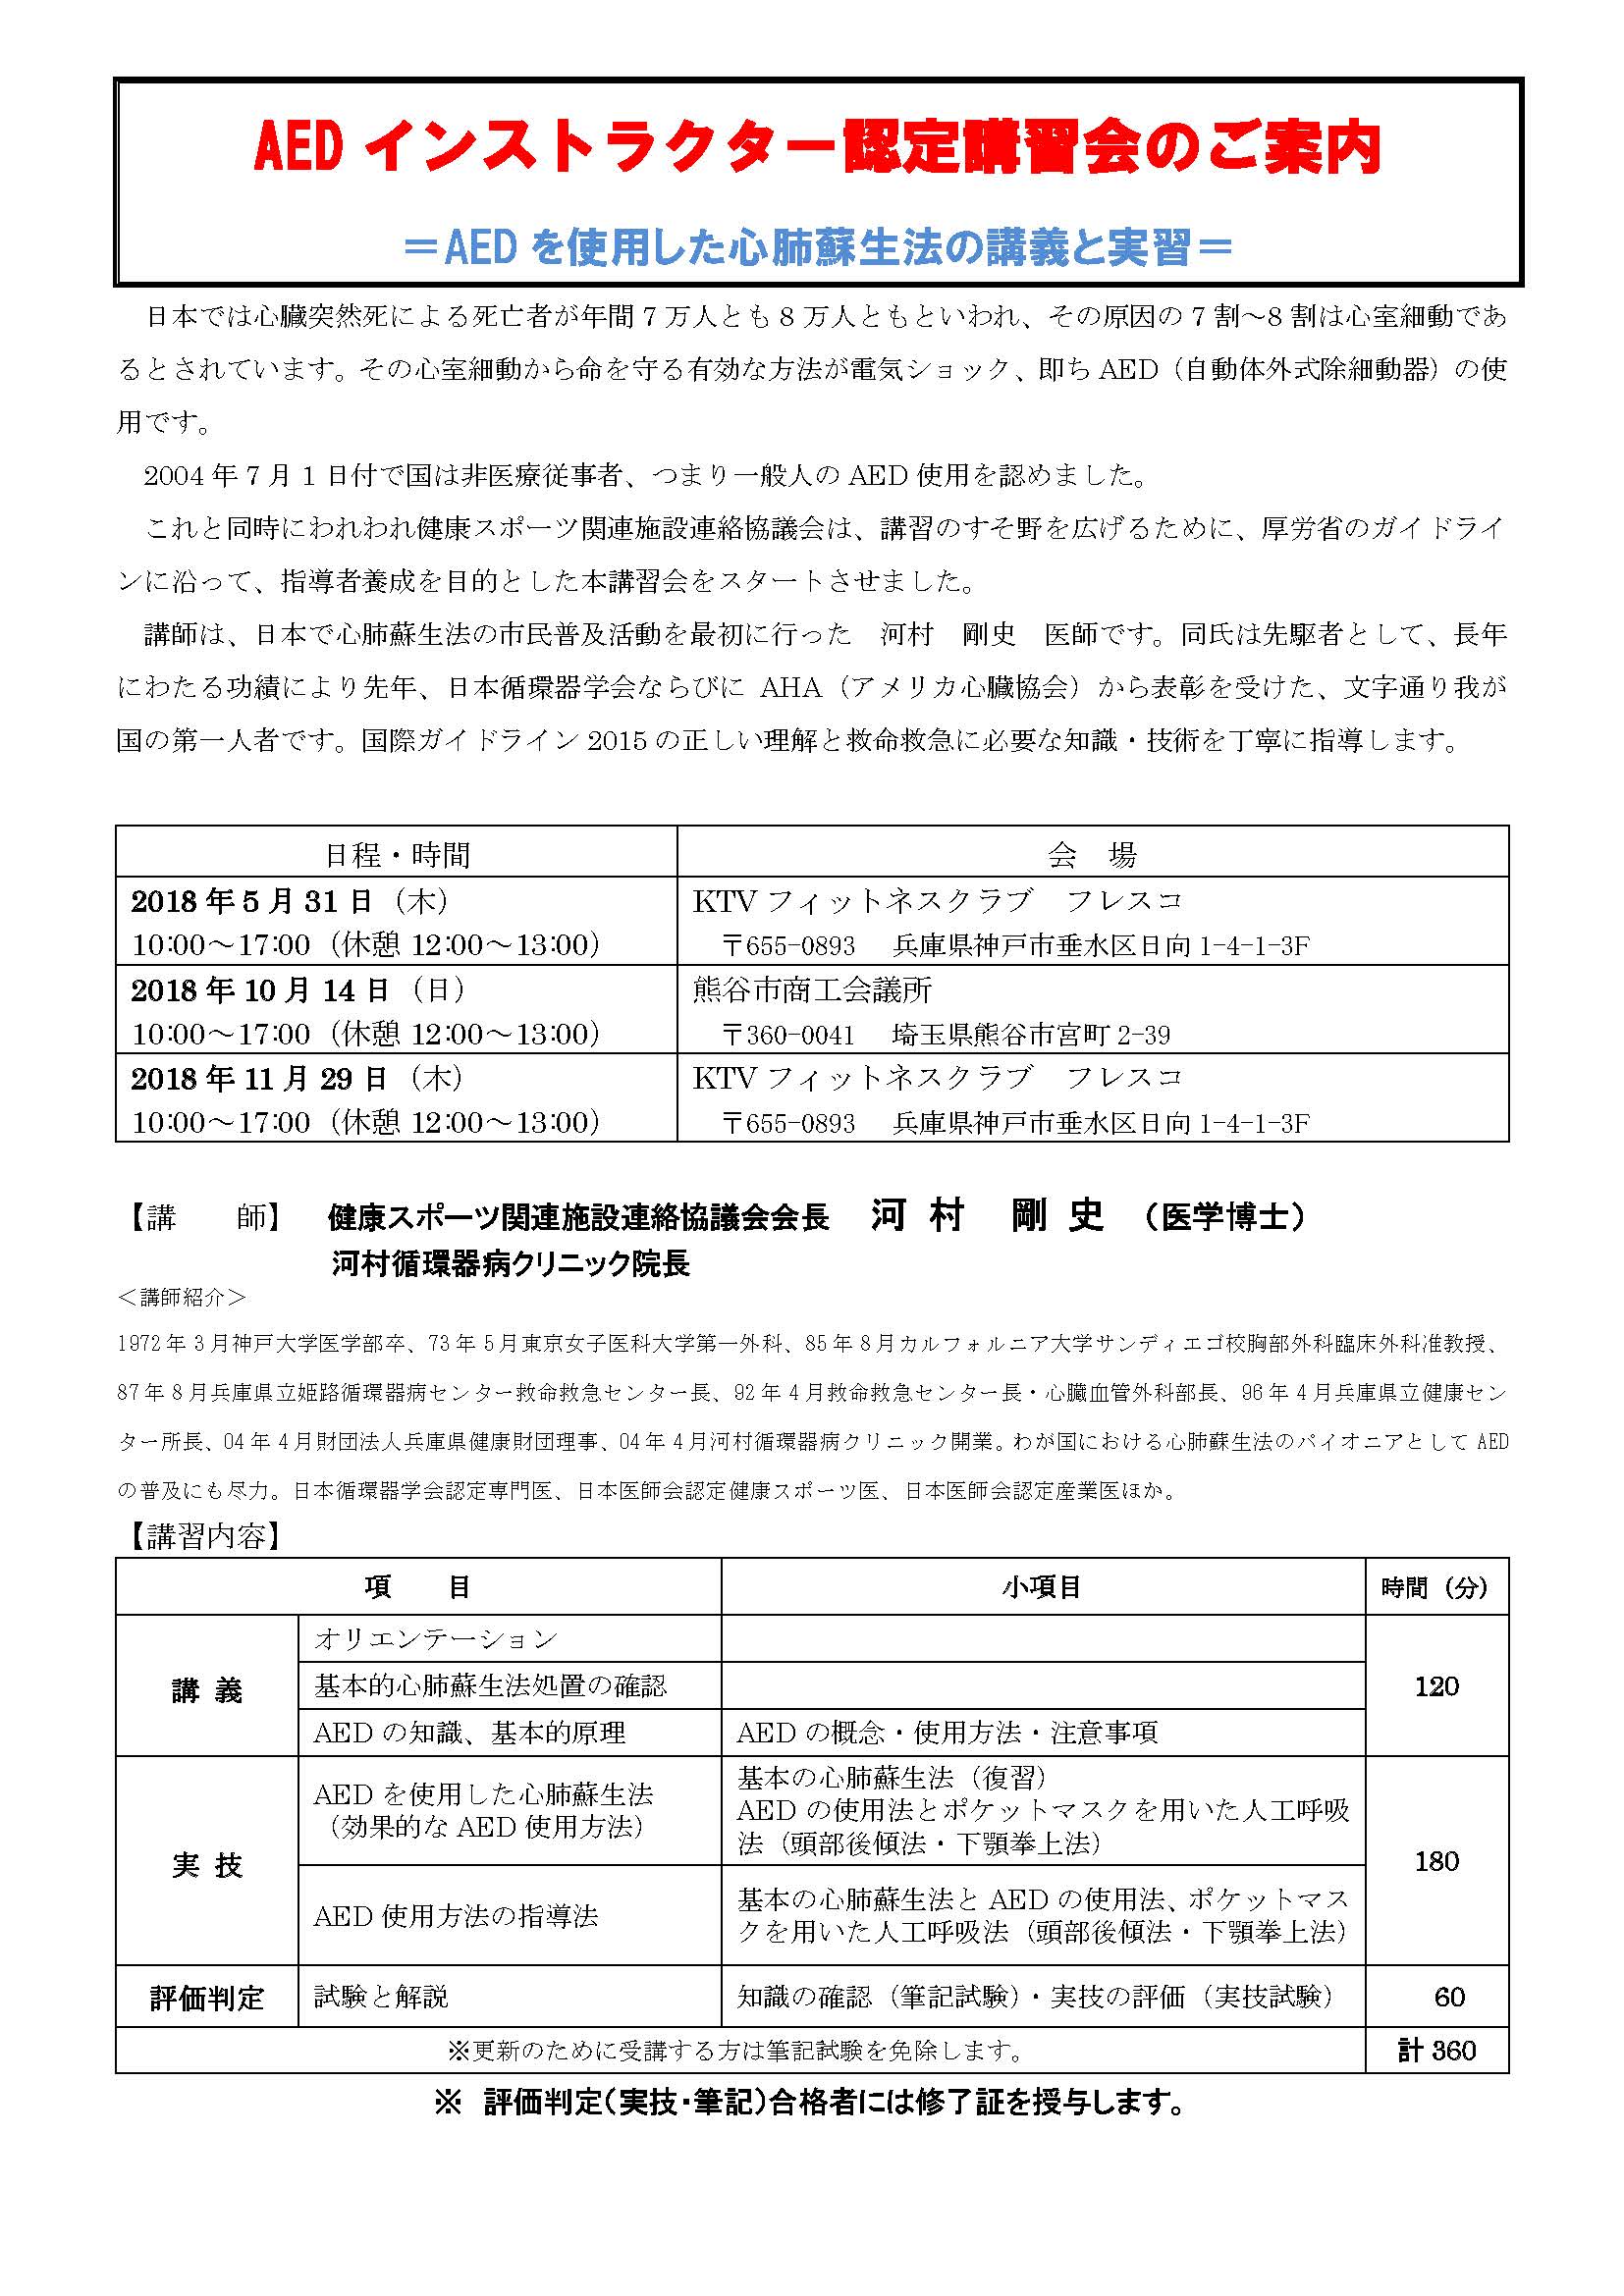 【2018年10月14日・熊谷開催】AEDインストラクター認定講習会のご案内